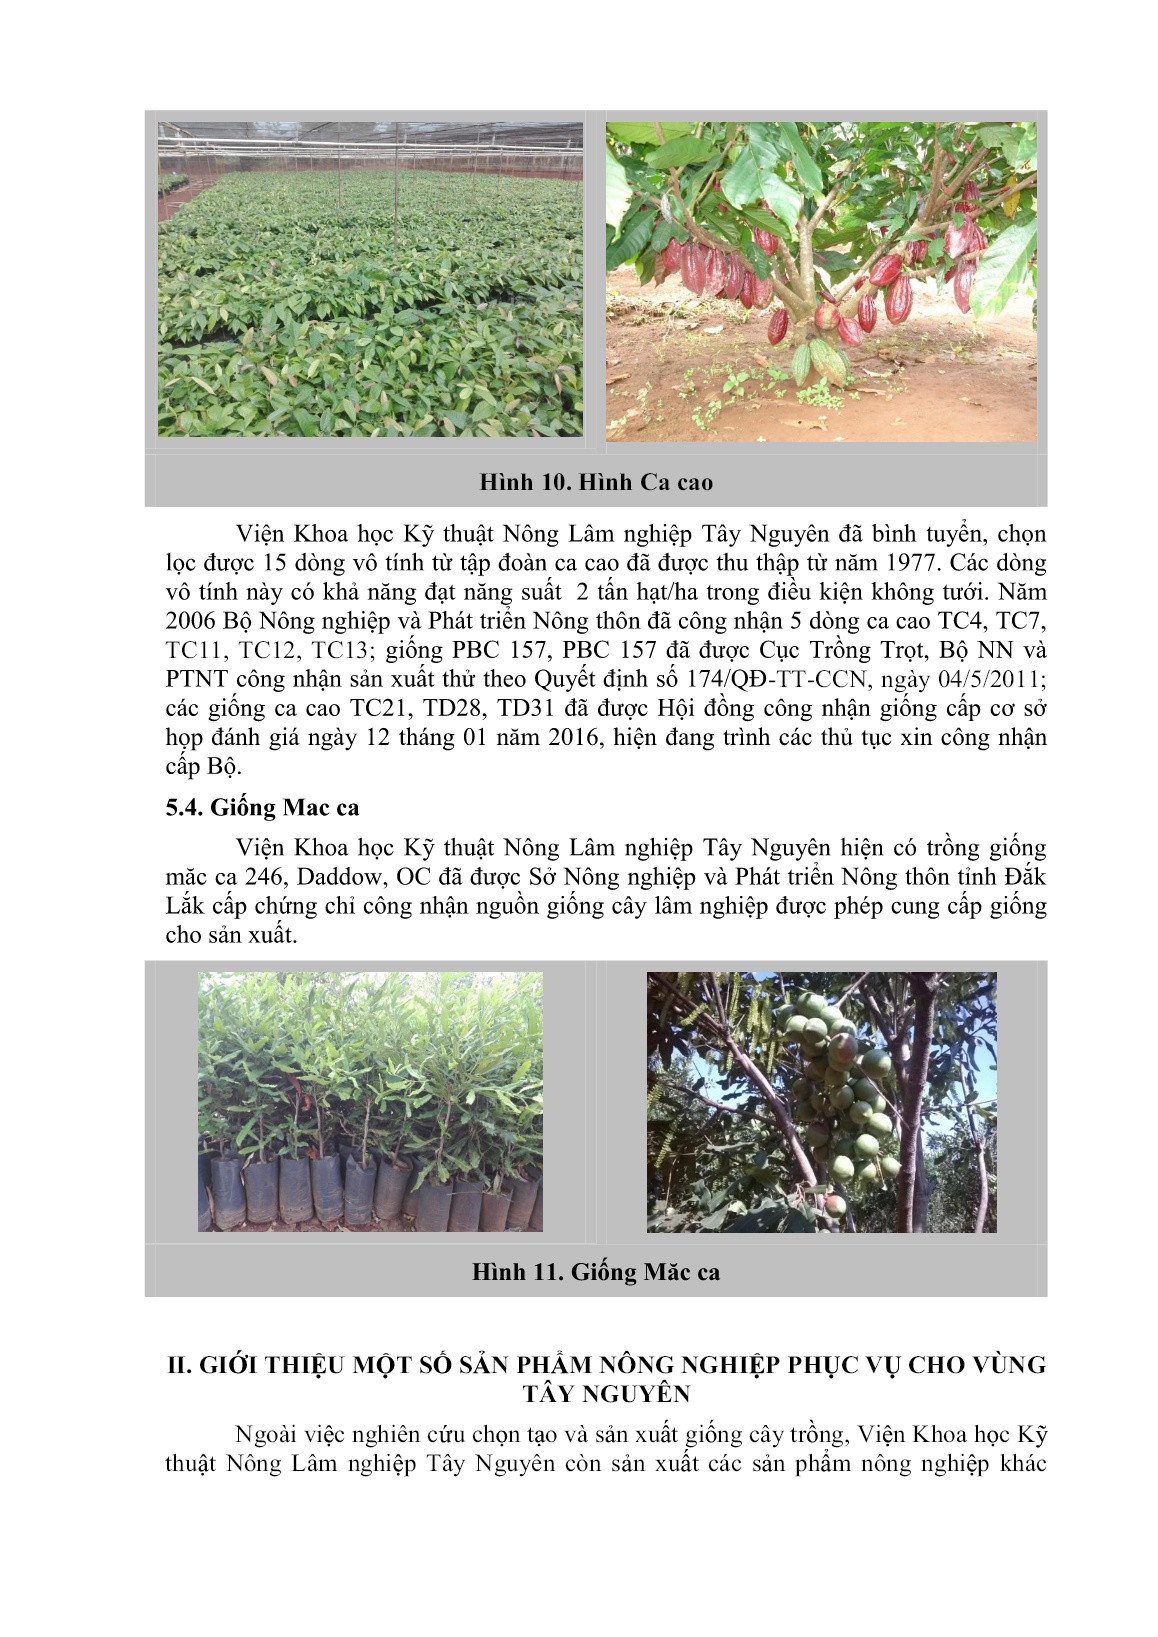 Giới thiệu một số giống cây trồng và các sản phẩm nông nghiệp phục vụ cho vùng Tây Nguyên trang 8